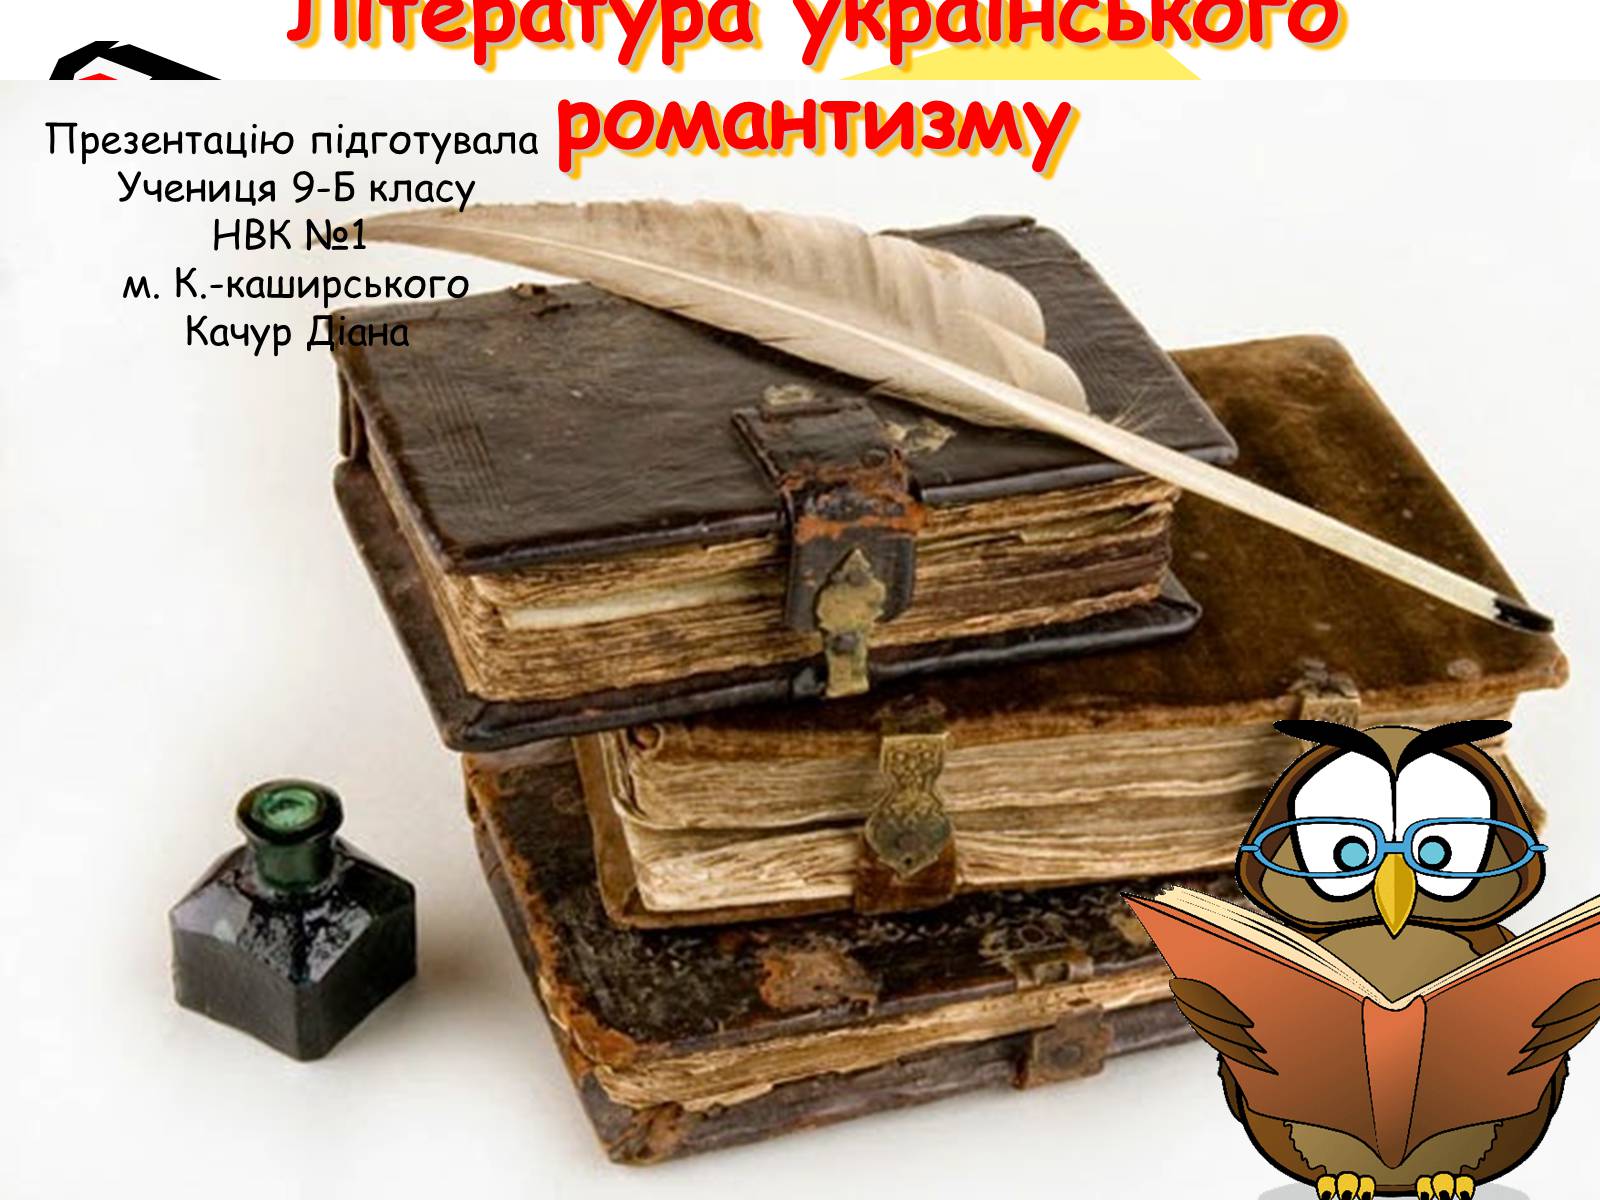 Презентація на тему «Література українського романтизму»